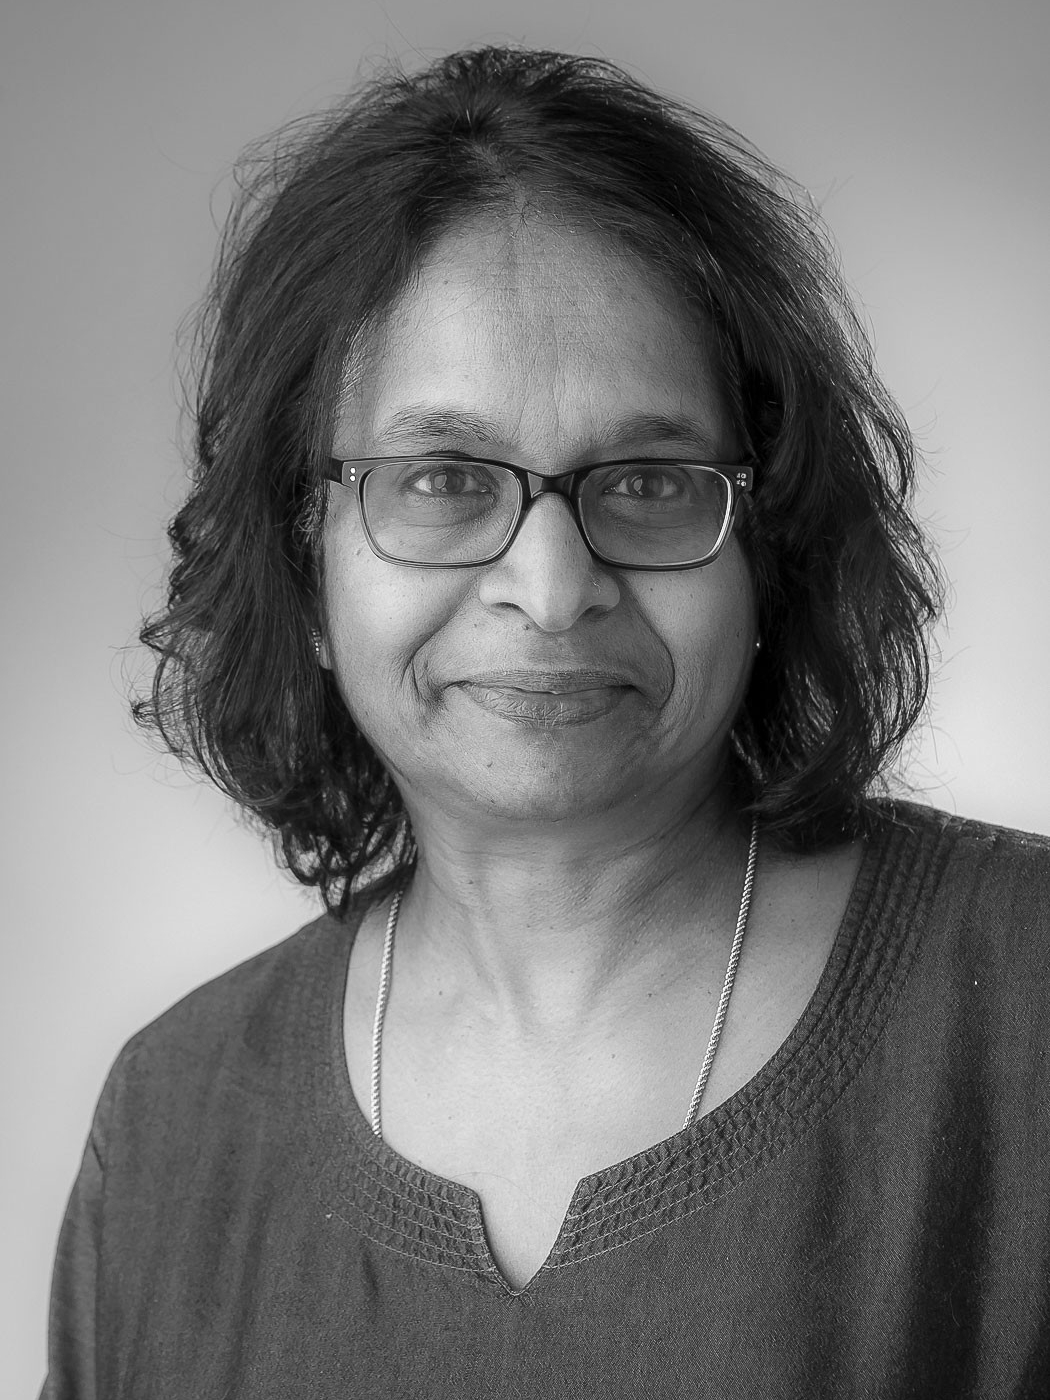 Dr. Kumari Beck